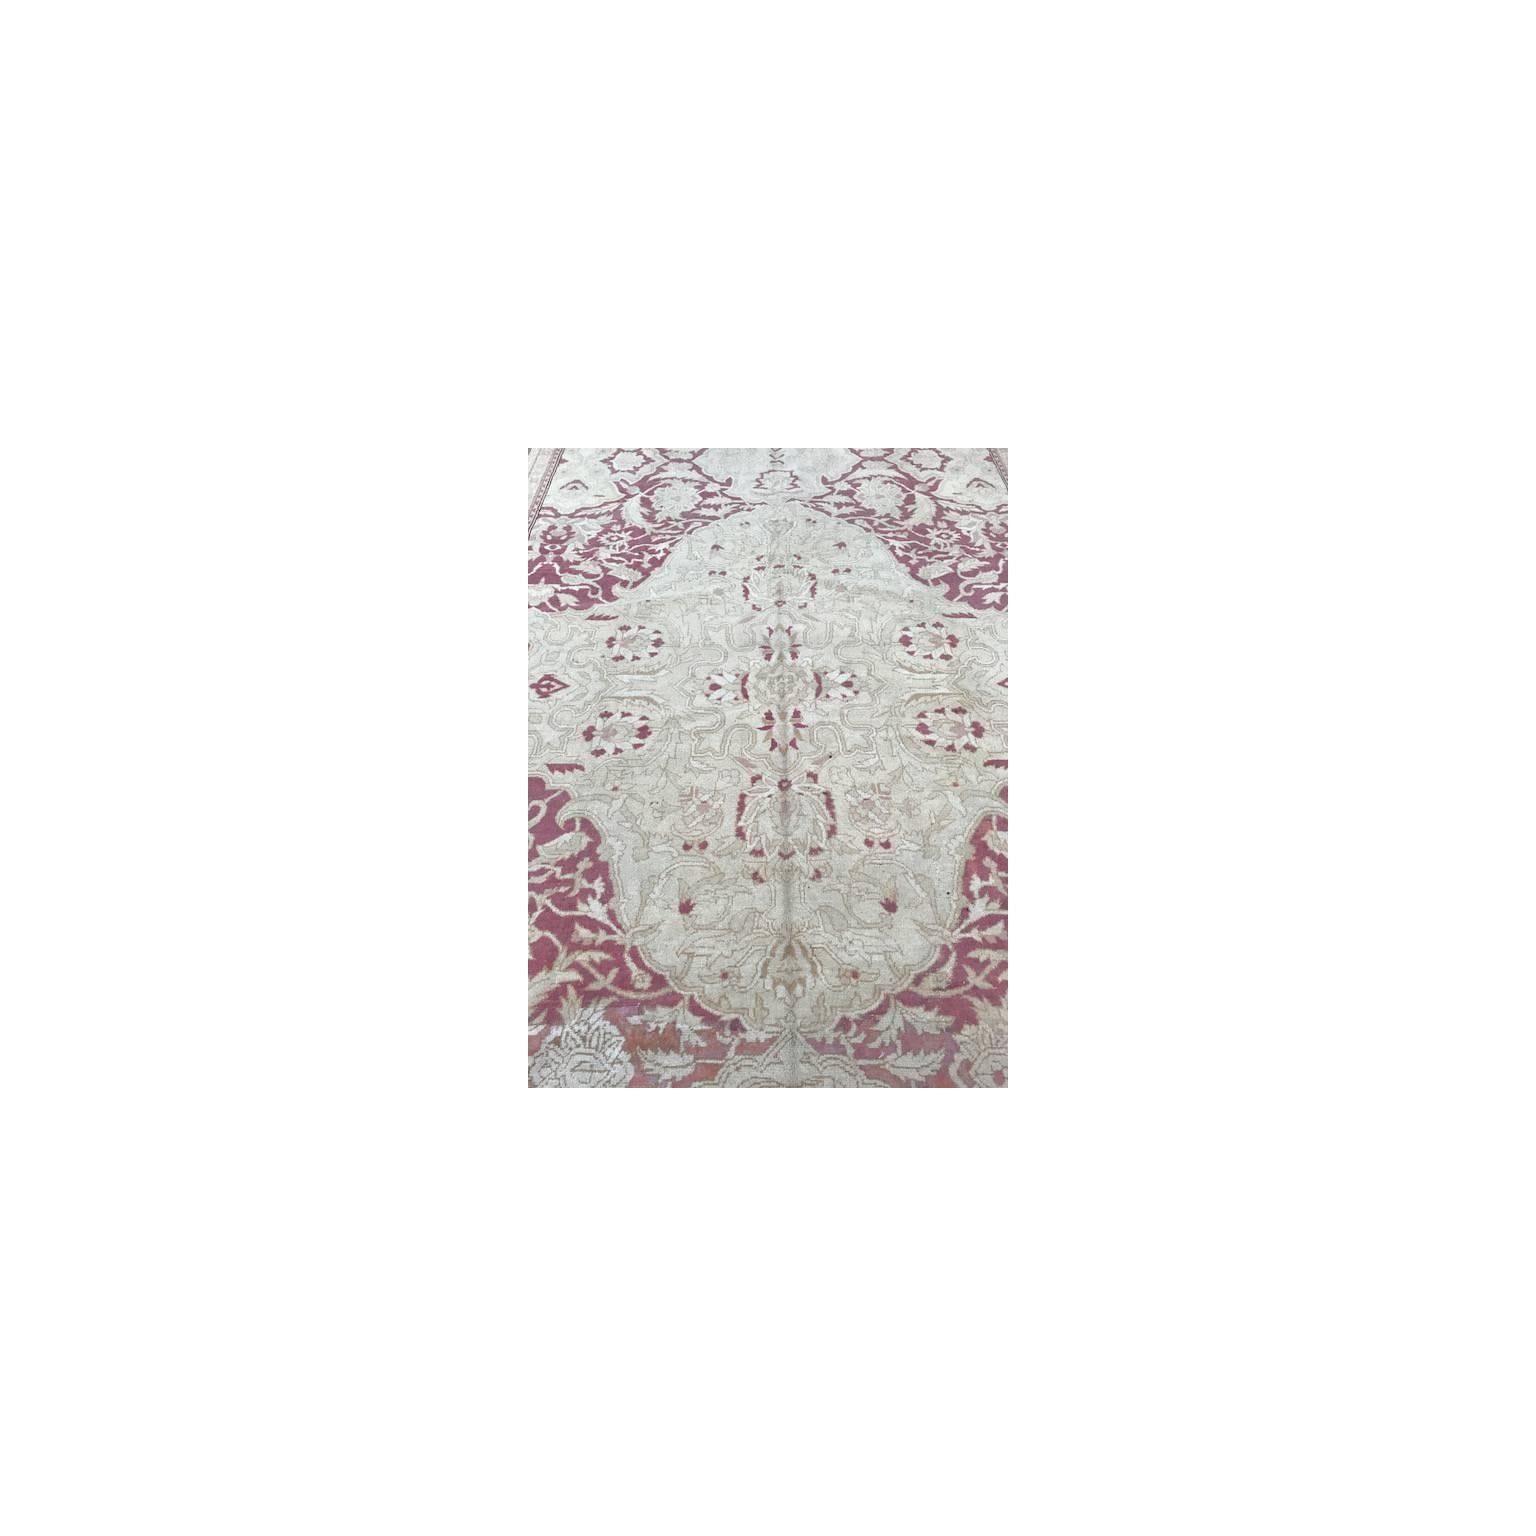 Antique Indo Agra rug

Measurement: 10' x 13'7